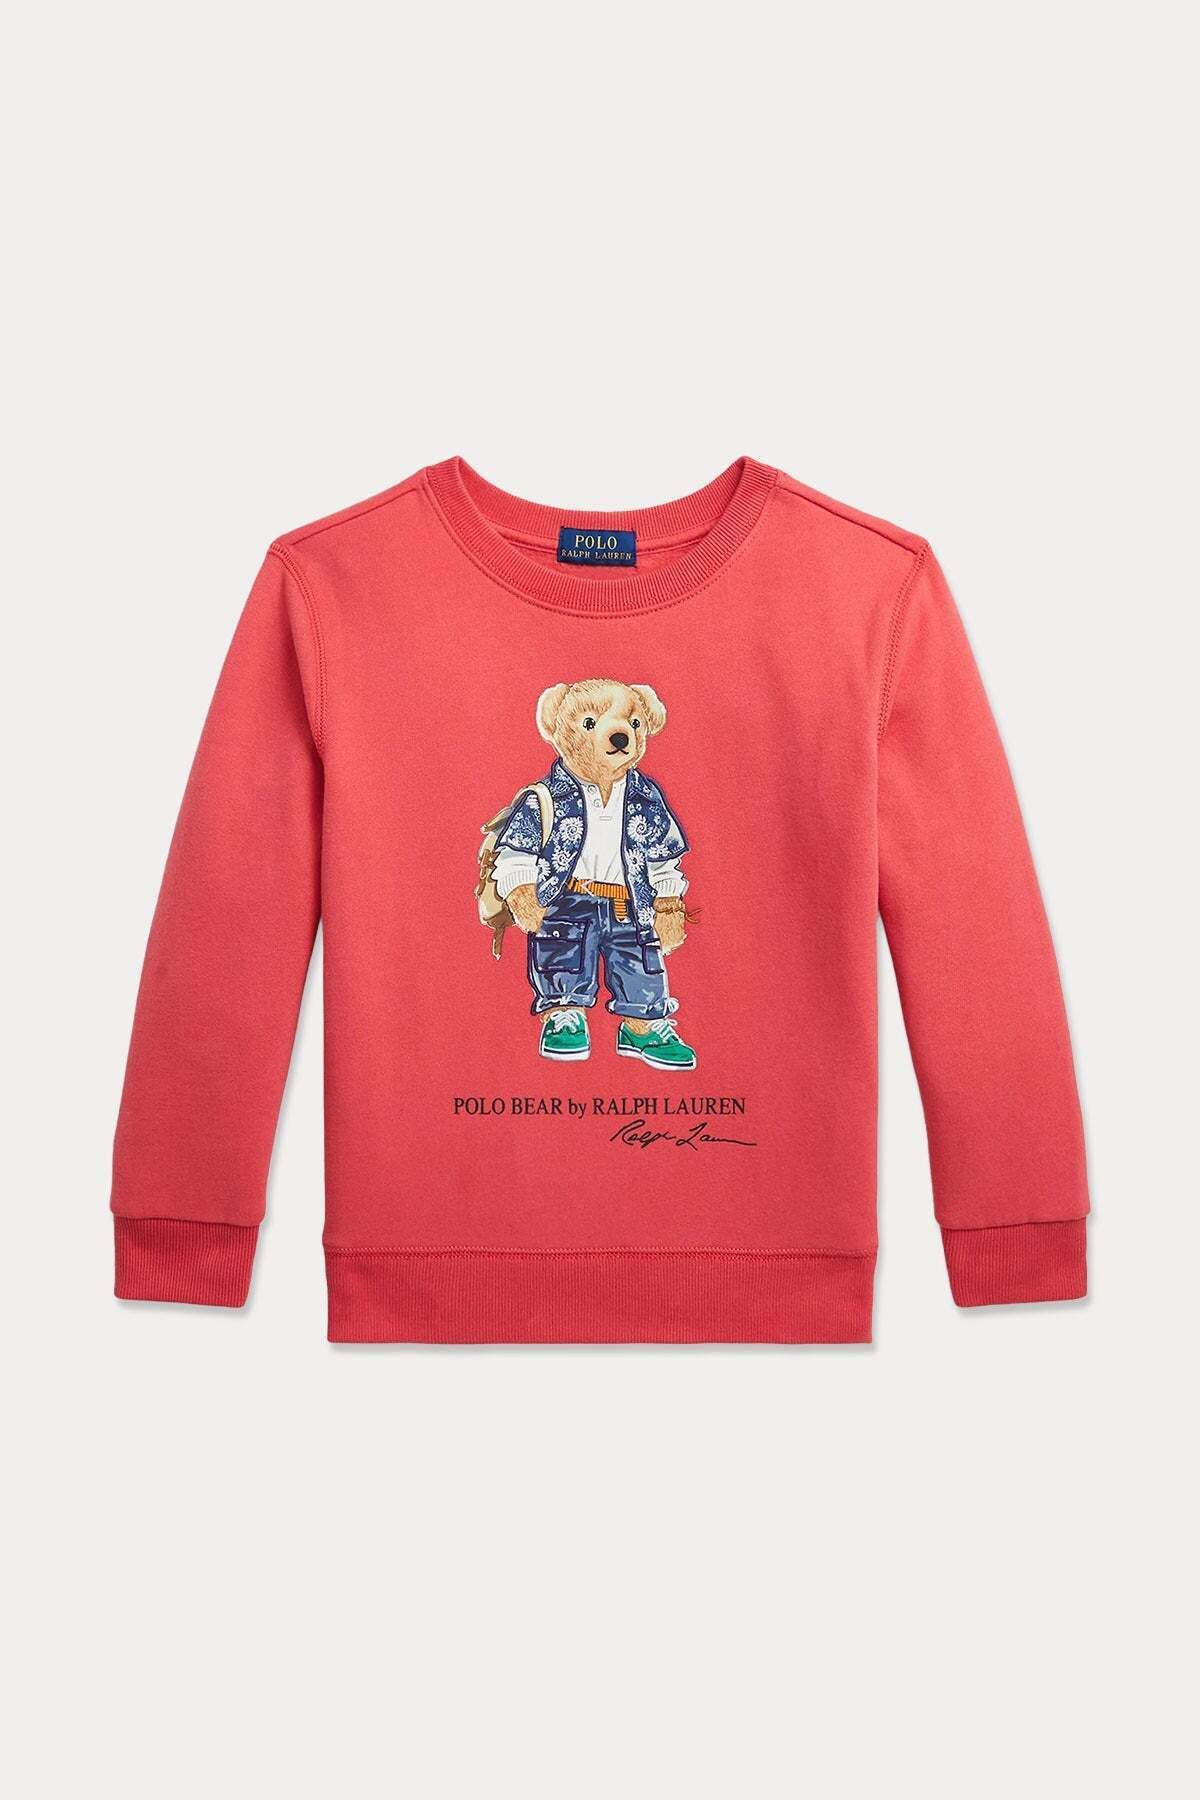 Ralph Lauren 2-6 Yaş Unisex Çocuk Polo Bear Sweatshirt 6y / Kırmızı